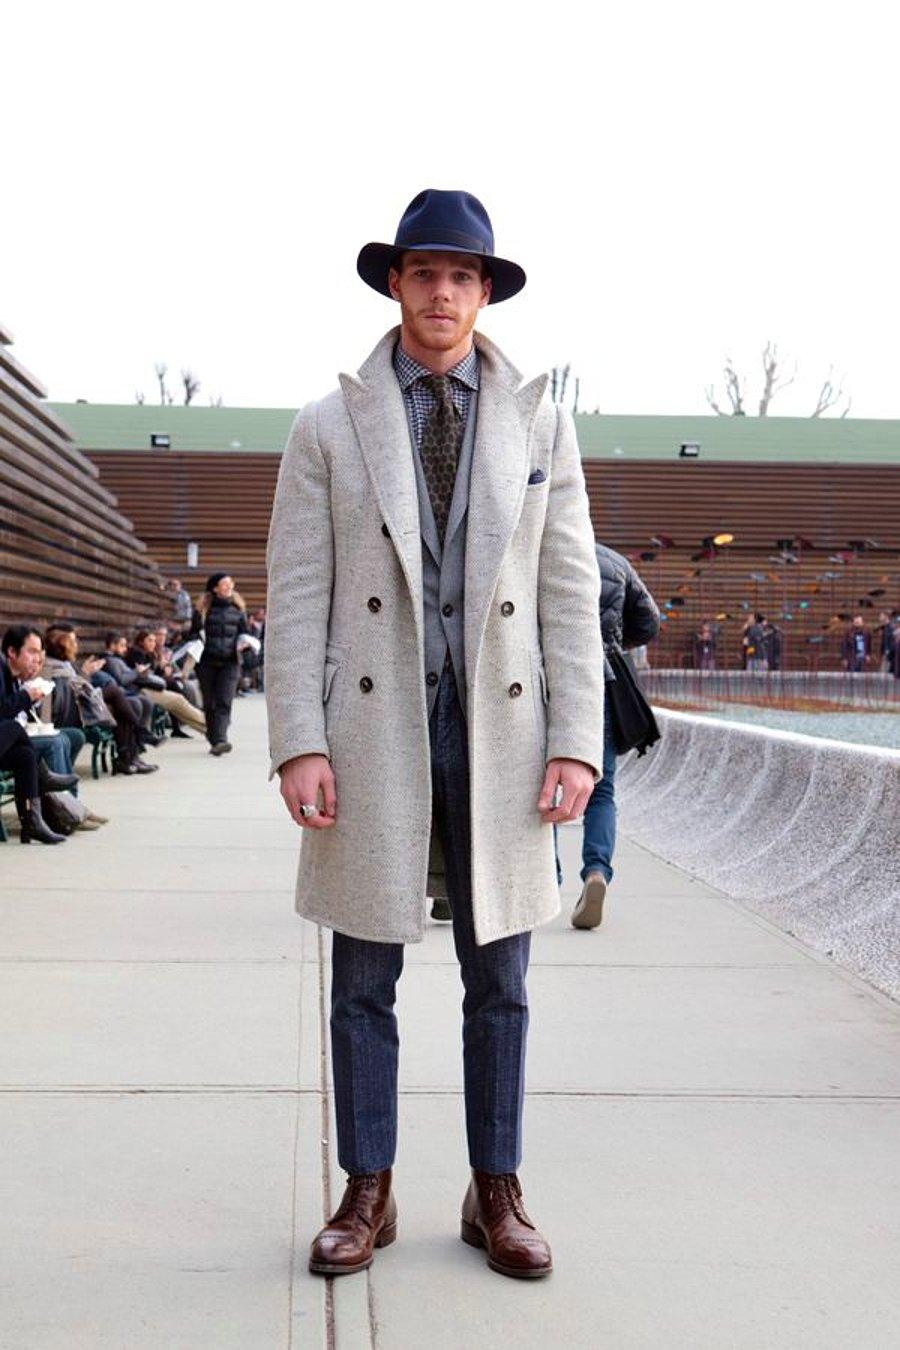 Без шляпы и пальто. Pitti uomo пальто. Пальто мужское. Шляпа под пальто мужское. Мужчина в пальто и шляпе.